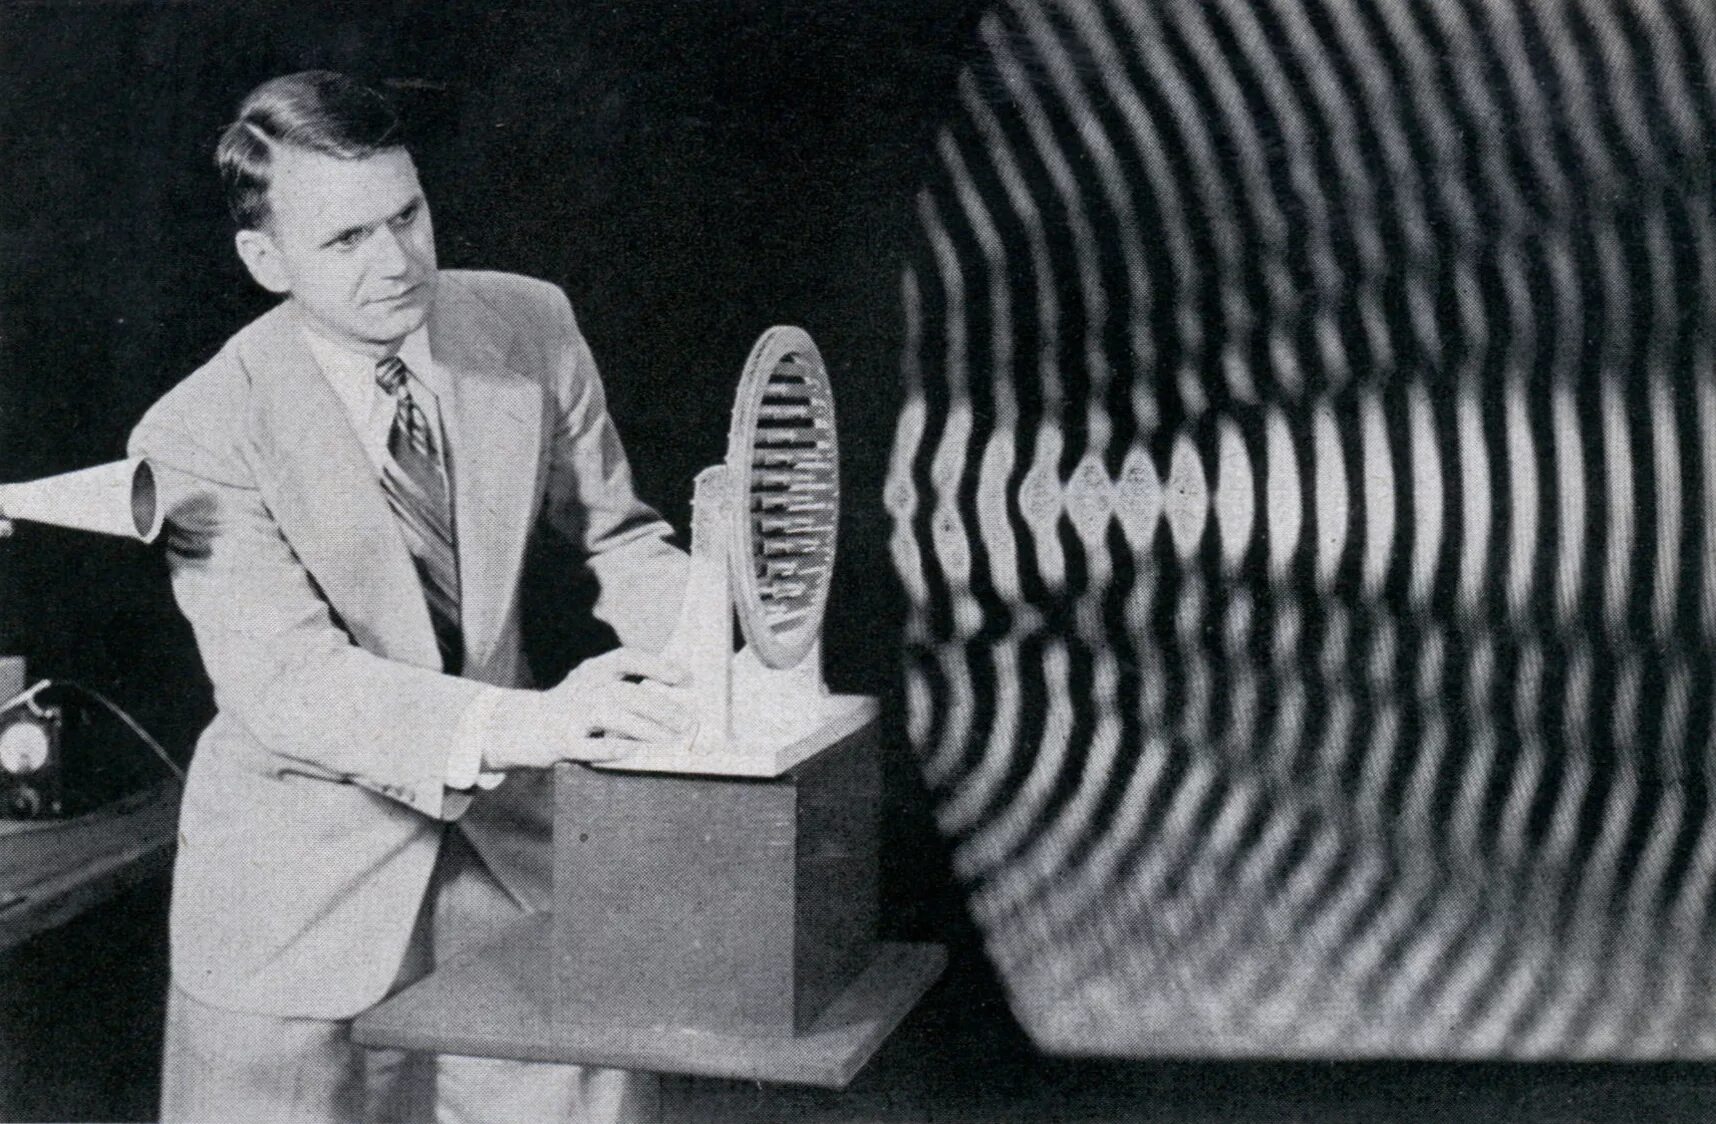 Технология цифровой записи звука была изобретена. Гавро инфразвук.